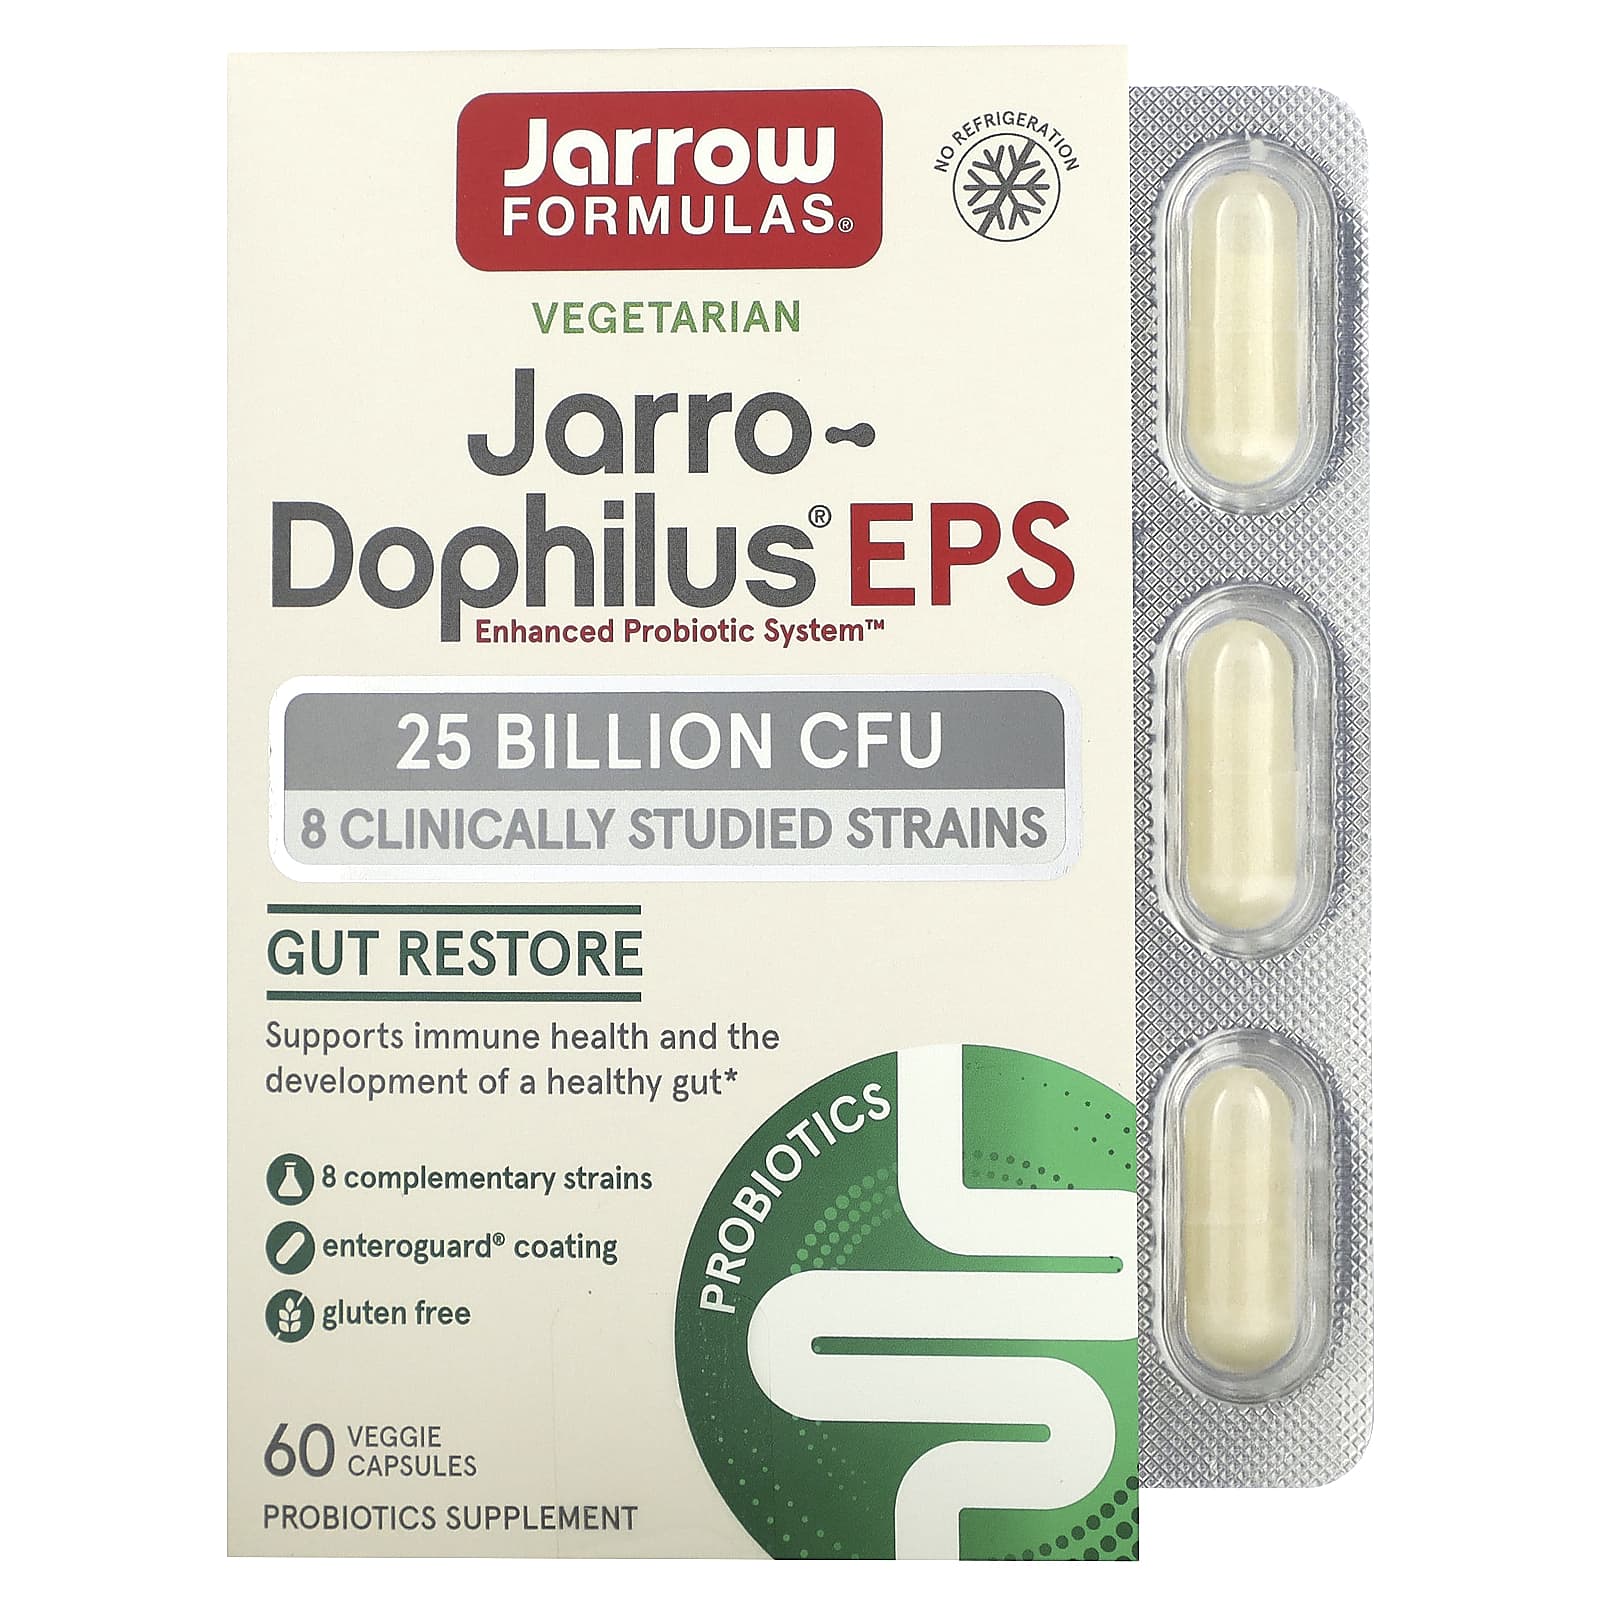 пробиотики для детей со вкусом малины jarrow formulas jarro dophilus kids 1 billion cfu в жевательных таблетках 60 шт Jarrow Formulas Jarro-Dophilus EPS 25 Billion 60 Enteroguard Veggie Caps